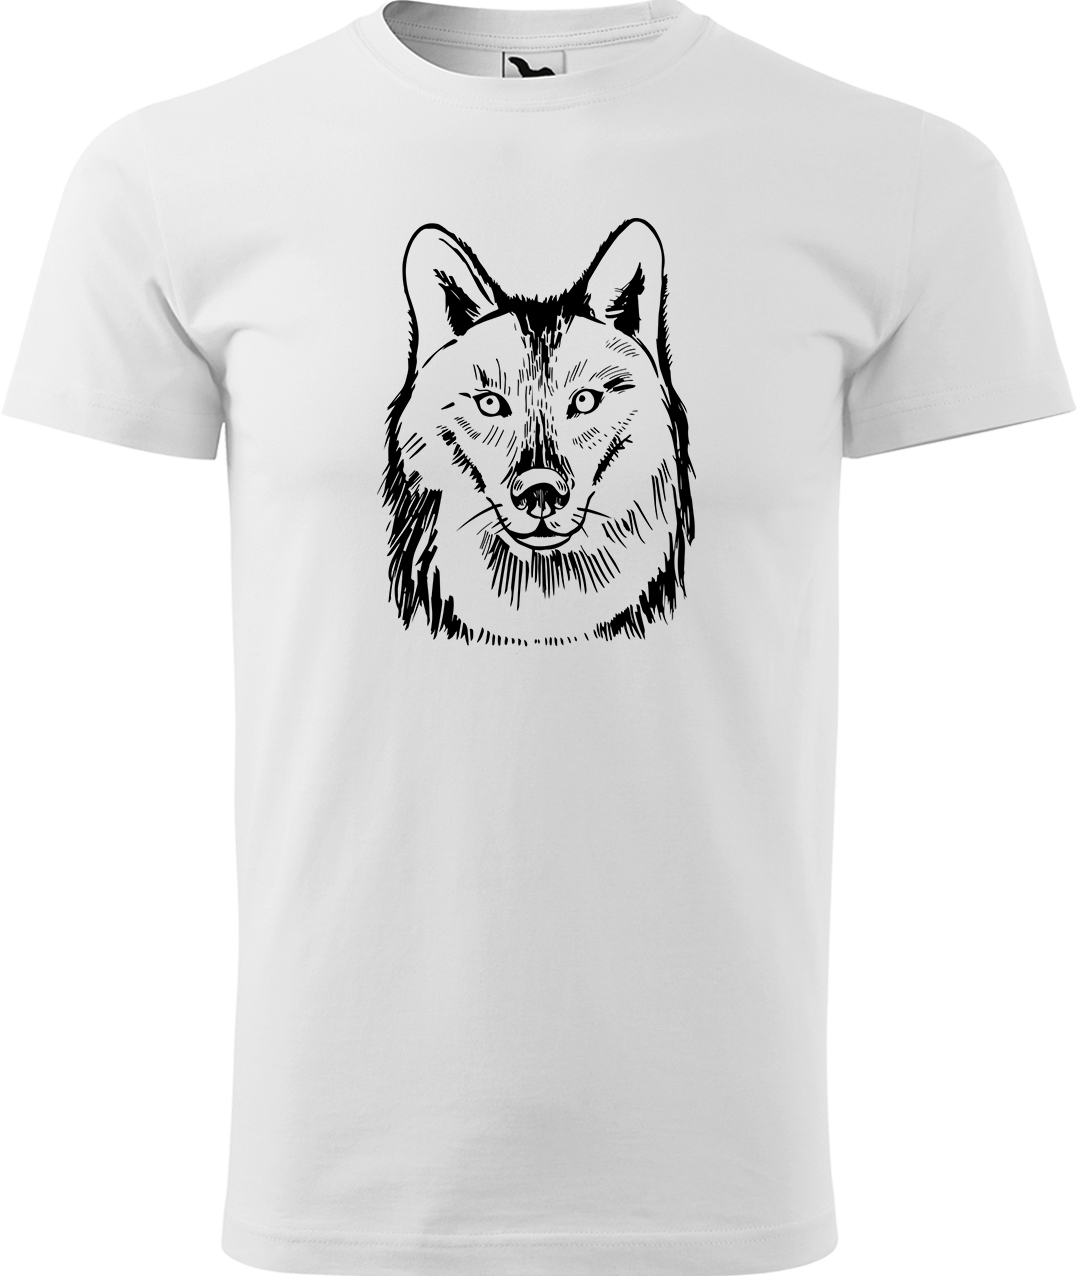 Pánské tričko s vlkem - Kresba vlka Velikost: 3XL, Barva: Bílá (00), Střih: pánský